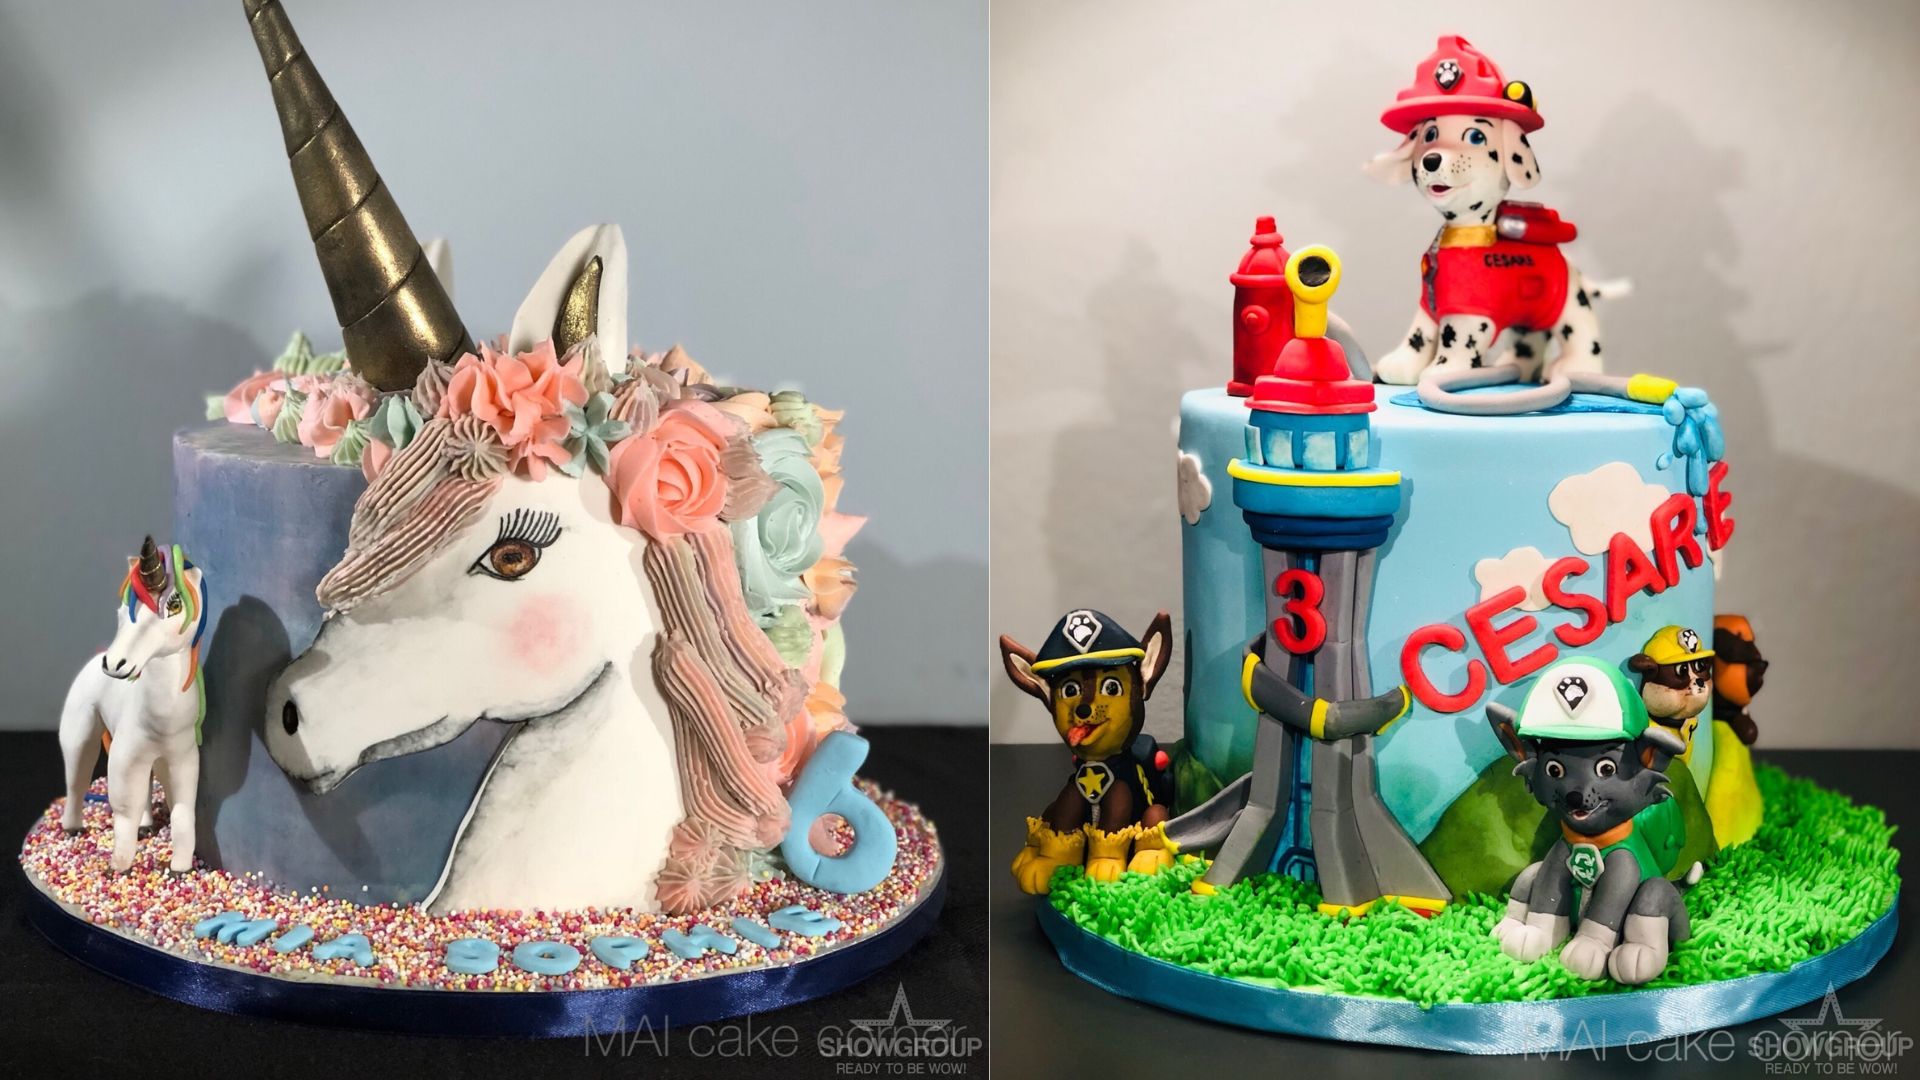 Mai Cake&Art Corner